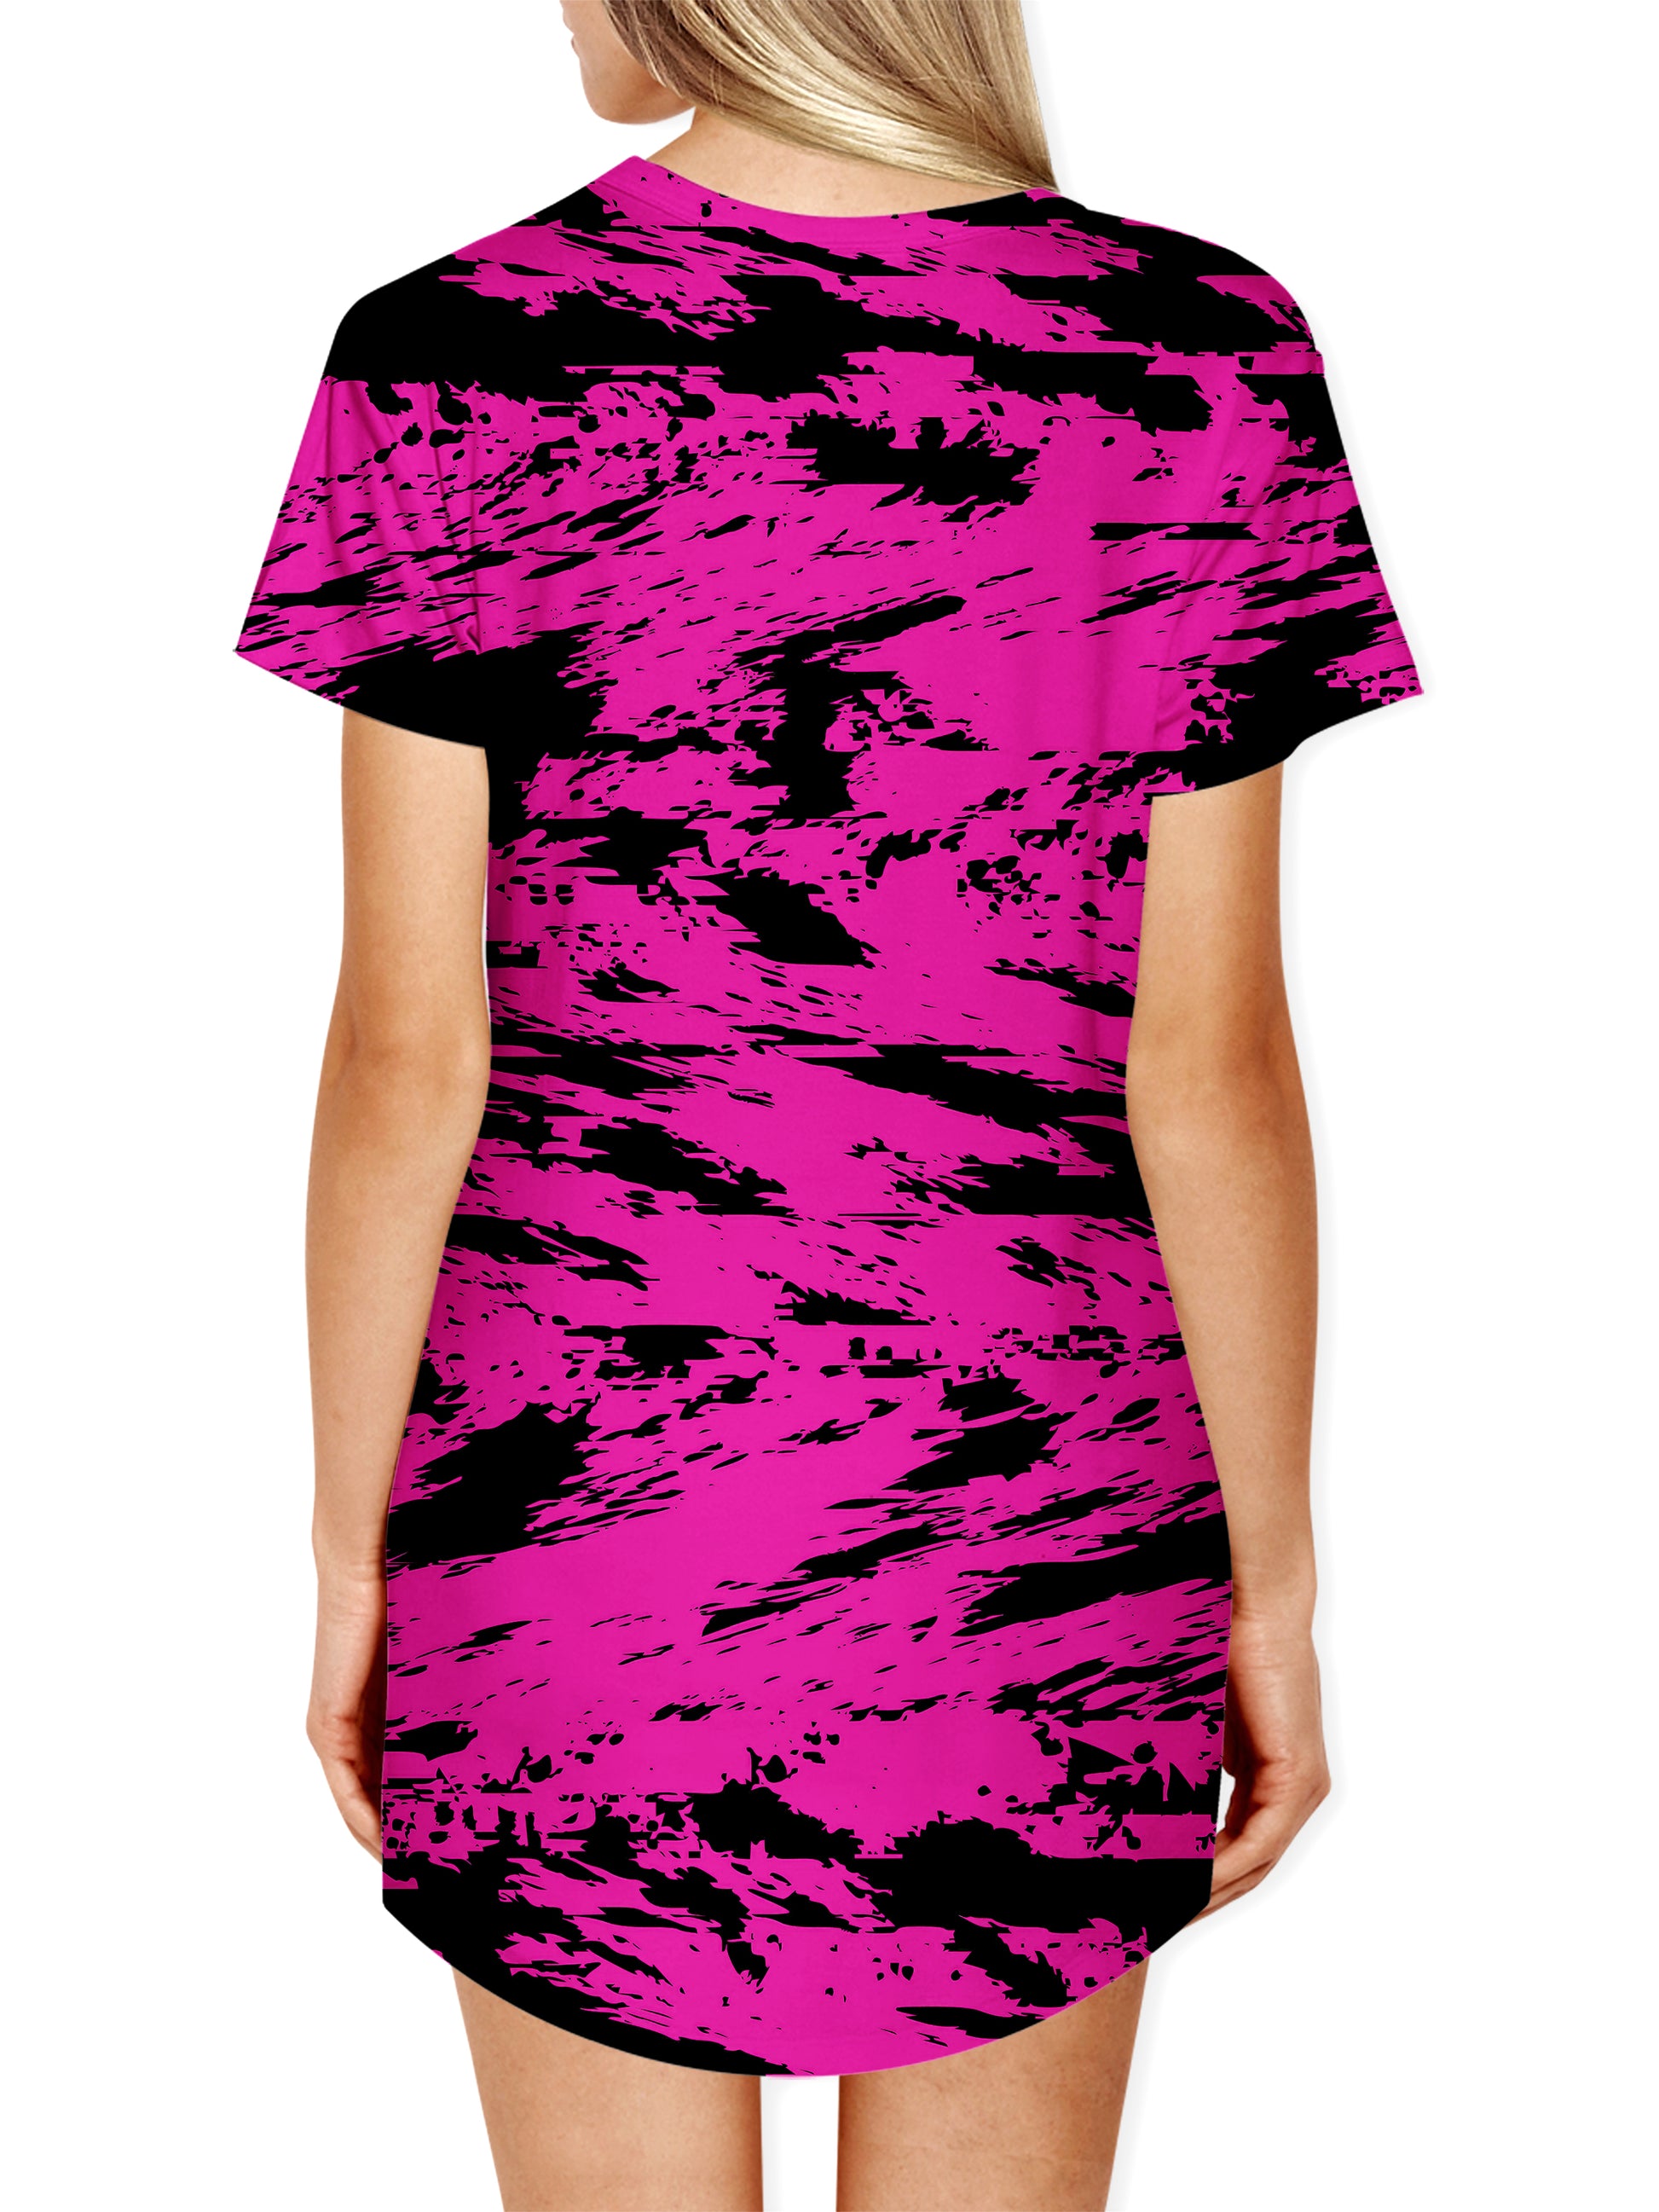 Pink and Black Rave Glitch Splatter Drop Cut T-Shirt, Big Tex Funkadelic, | iEDM